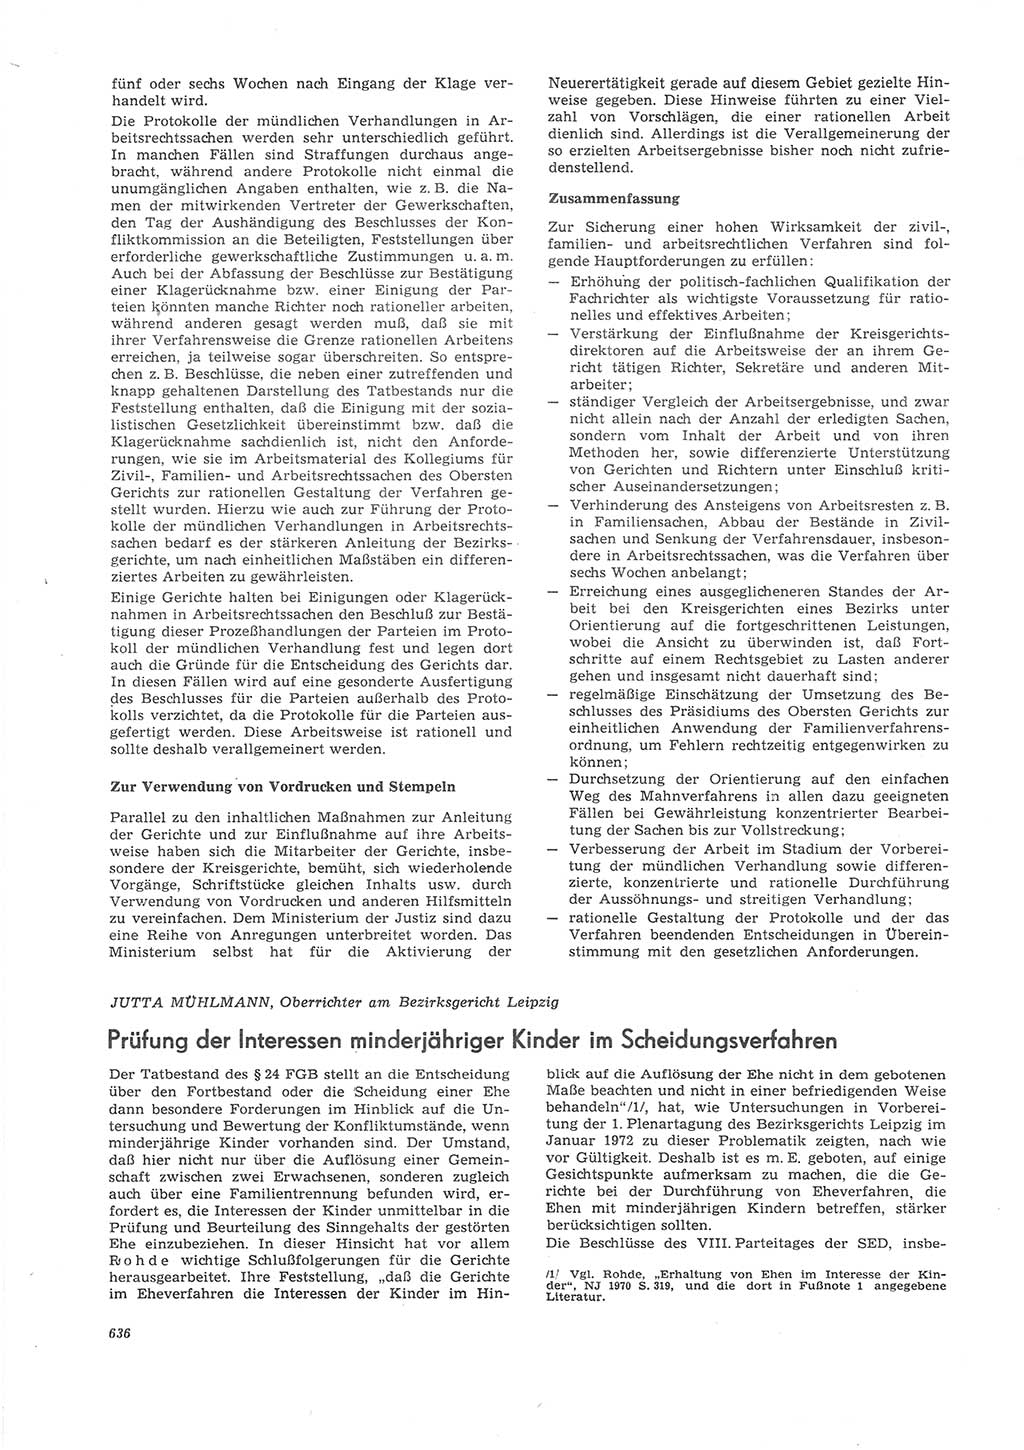 Neue Justiz (NJ), Zeitschrift für Recht und Rechtswissenschaft [Deutsche Demokratische Republik (DDR)], 26. Jahrgang 1972, Seite 636 (NJ DDR 1972, S. 636)